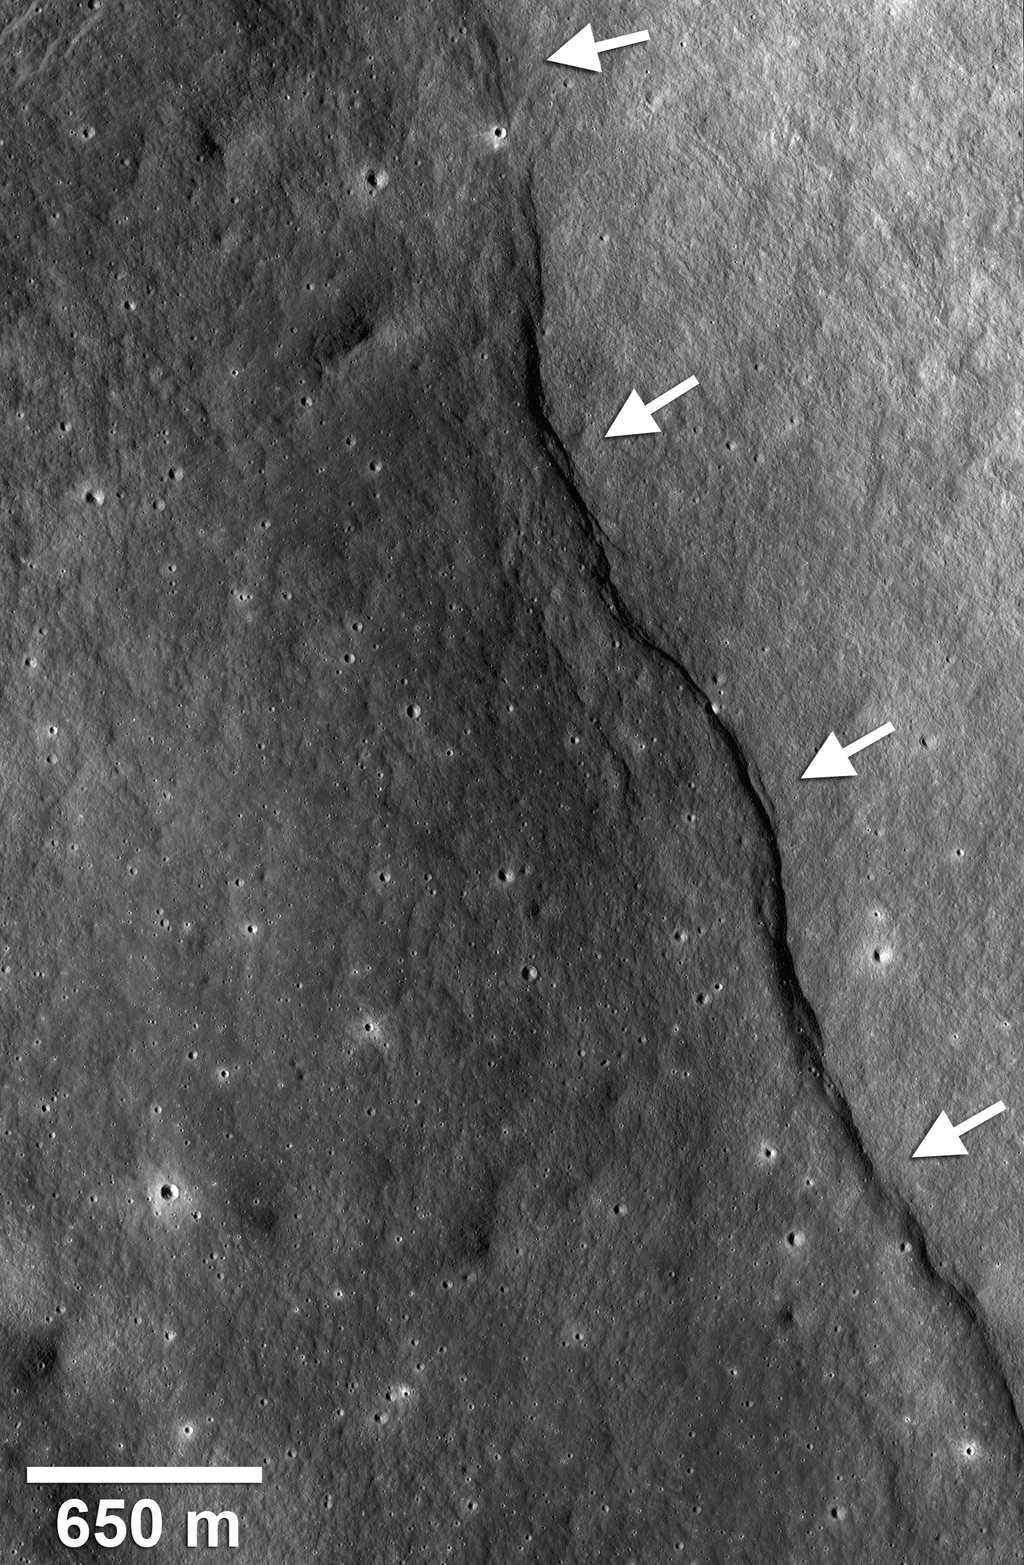 Près du cratère Gregory (2,1°N, 128,1°E), un escarpement de faille est bien visible, comme le montrent les flèches blanches. Crédit : Nasa/Goddard/Arizona State University/Smithsonian